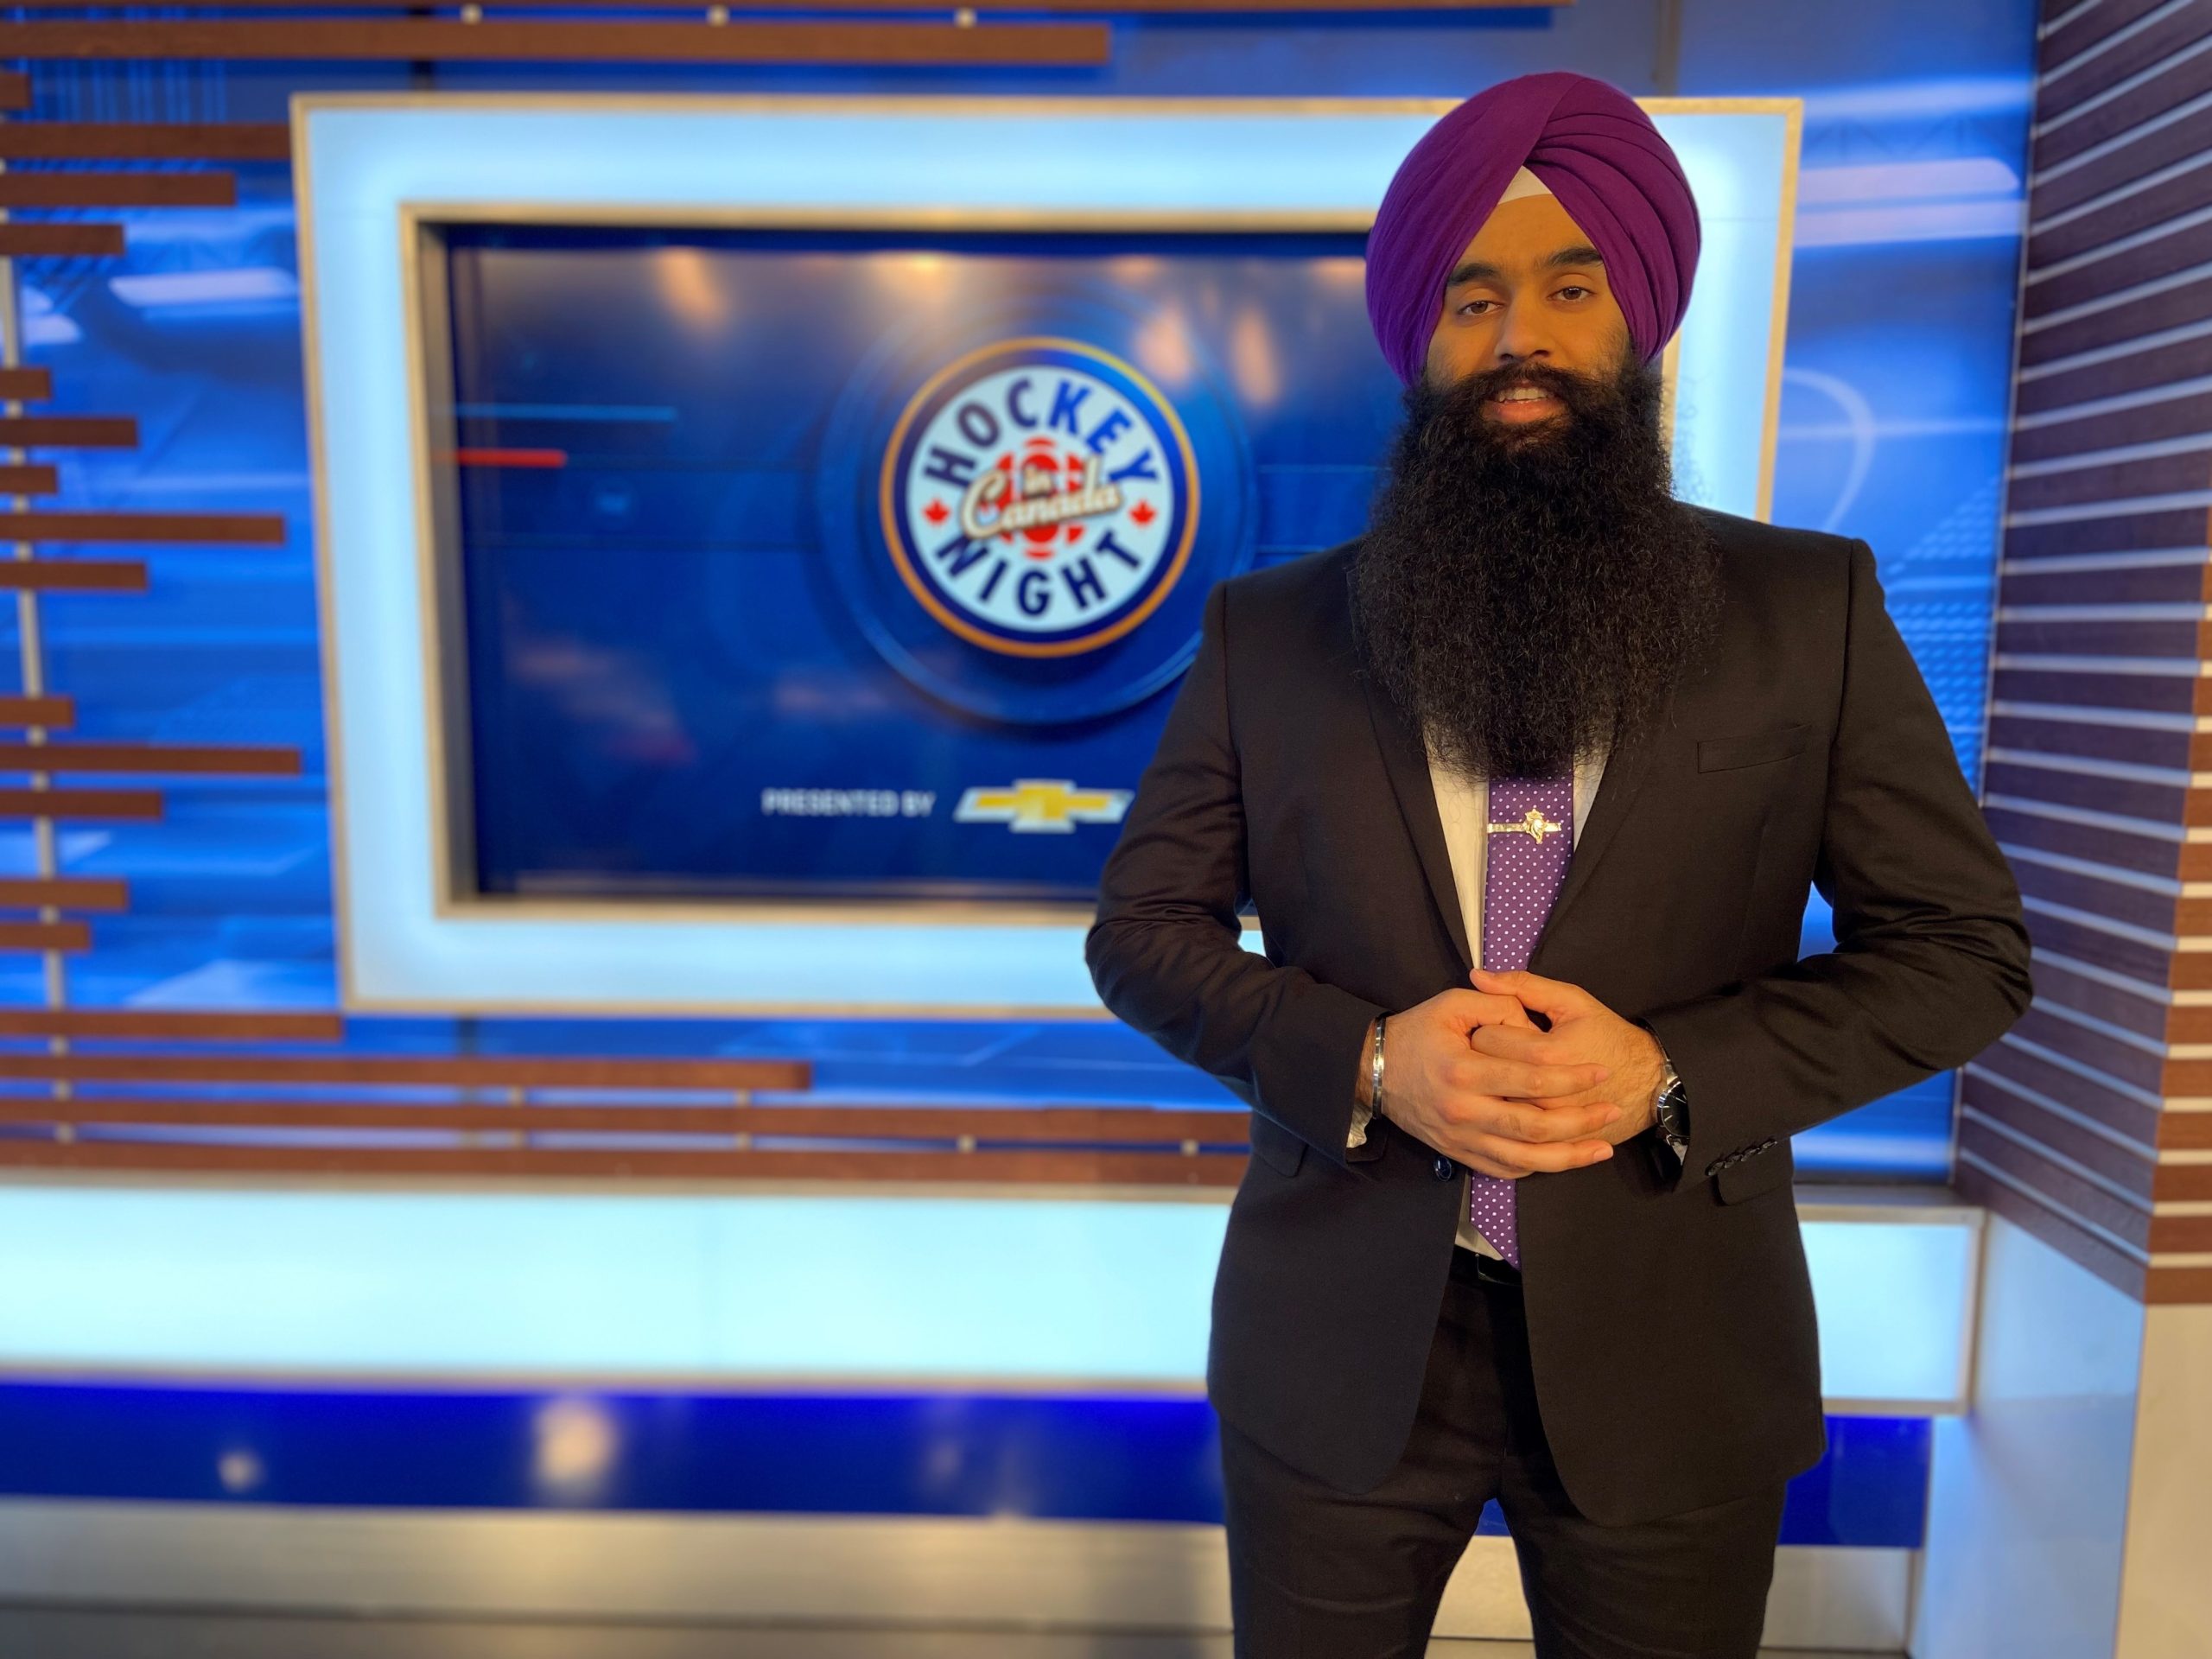 Hockey Night In Canada Punjabi Edition